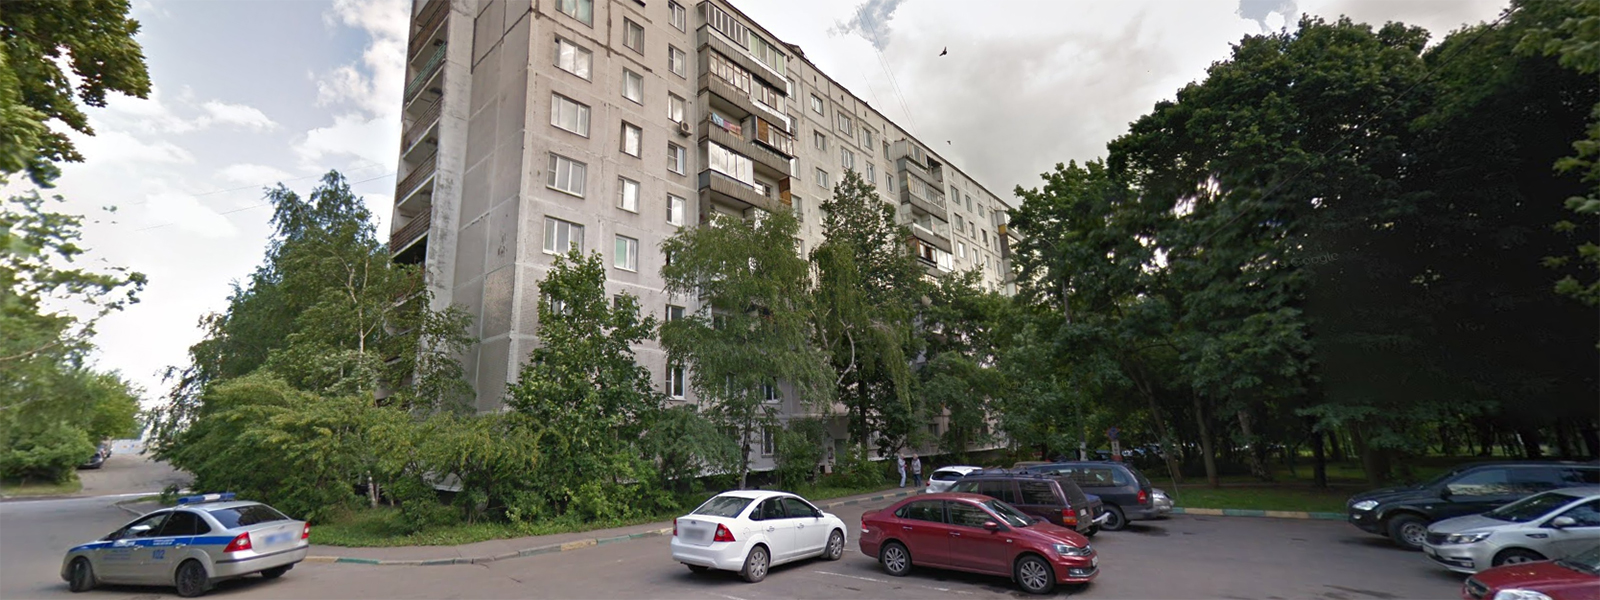 Журнал/12 тысяч в месяц: как выглядит самая дешевая квартира, которую можно снять в Москве